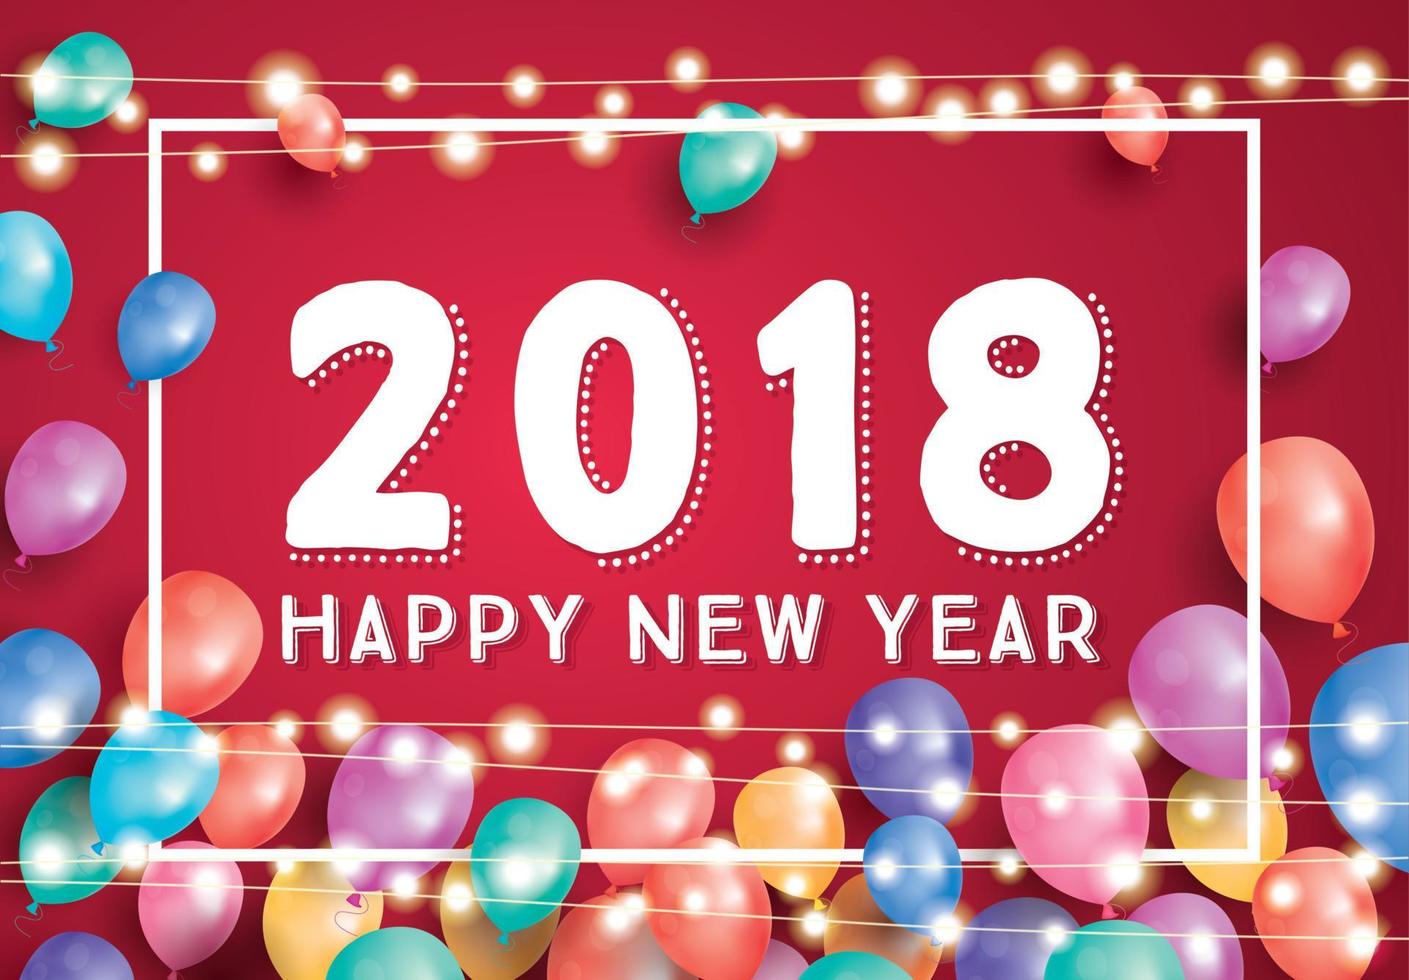 feliz ano novo 2018 cartão com balões voadores, moldura branca e guirlanda de néon. vetor